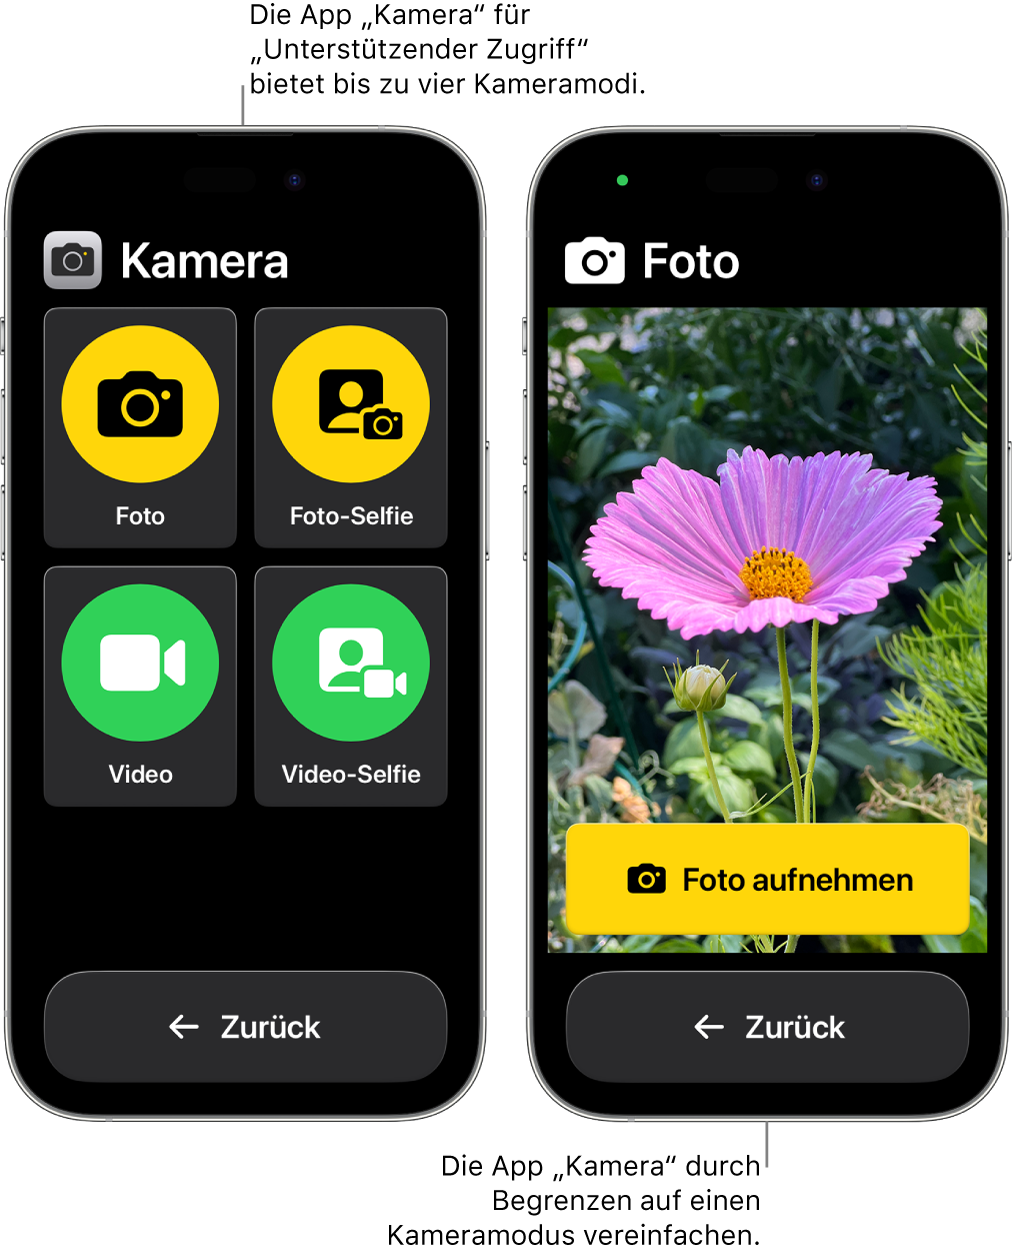 Zwei iPhone-Geräte mit der aktivierten Funktion „Unterstützender Zugriff“. Auf einem iPhone wird die App „Kamera“ mit auswählbaren Kameramodi wie „Video“ oder „Foto-Selfie“ angezeigt. Auf dem anderen iPhone wird die App „Kamera“ mit einem einzigen Modus zum Aufnehmen von Fotos angezeigt.